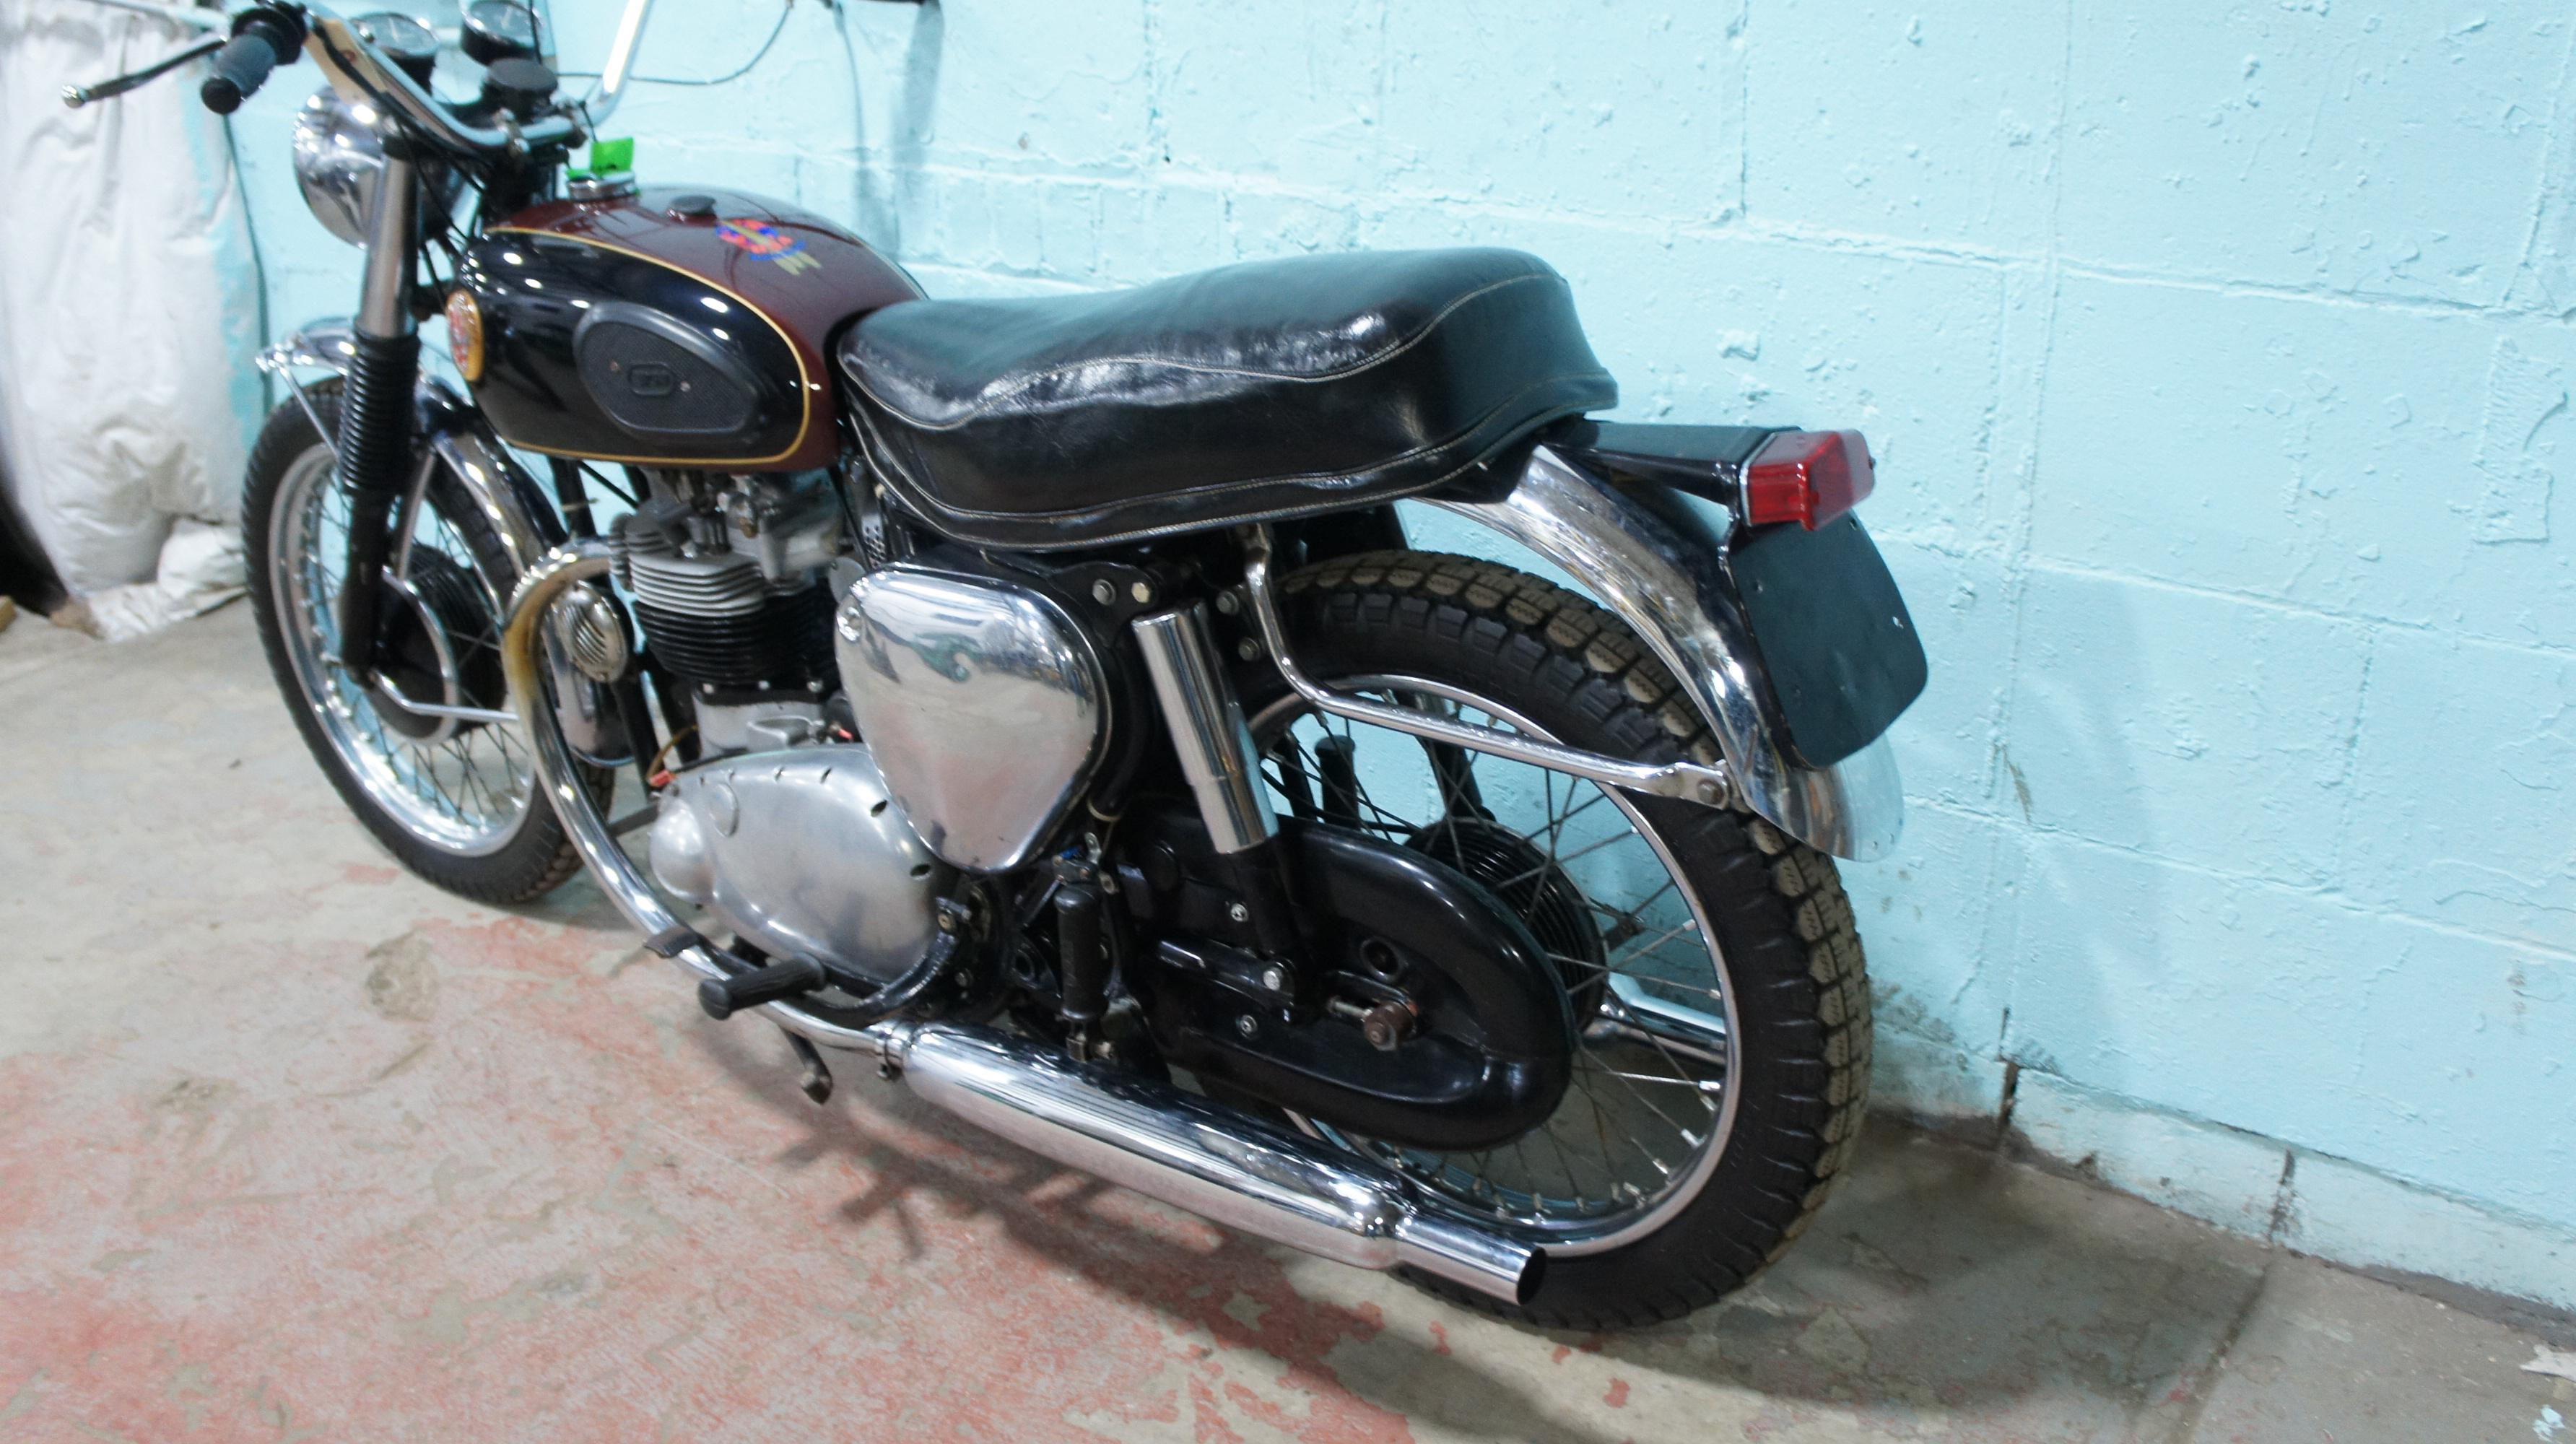 1959 BSA A10 Motorcycle